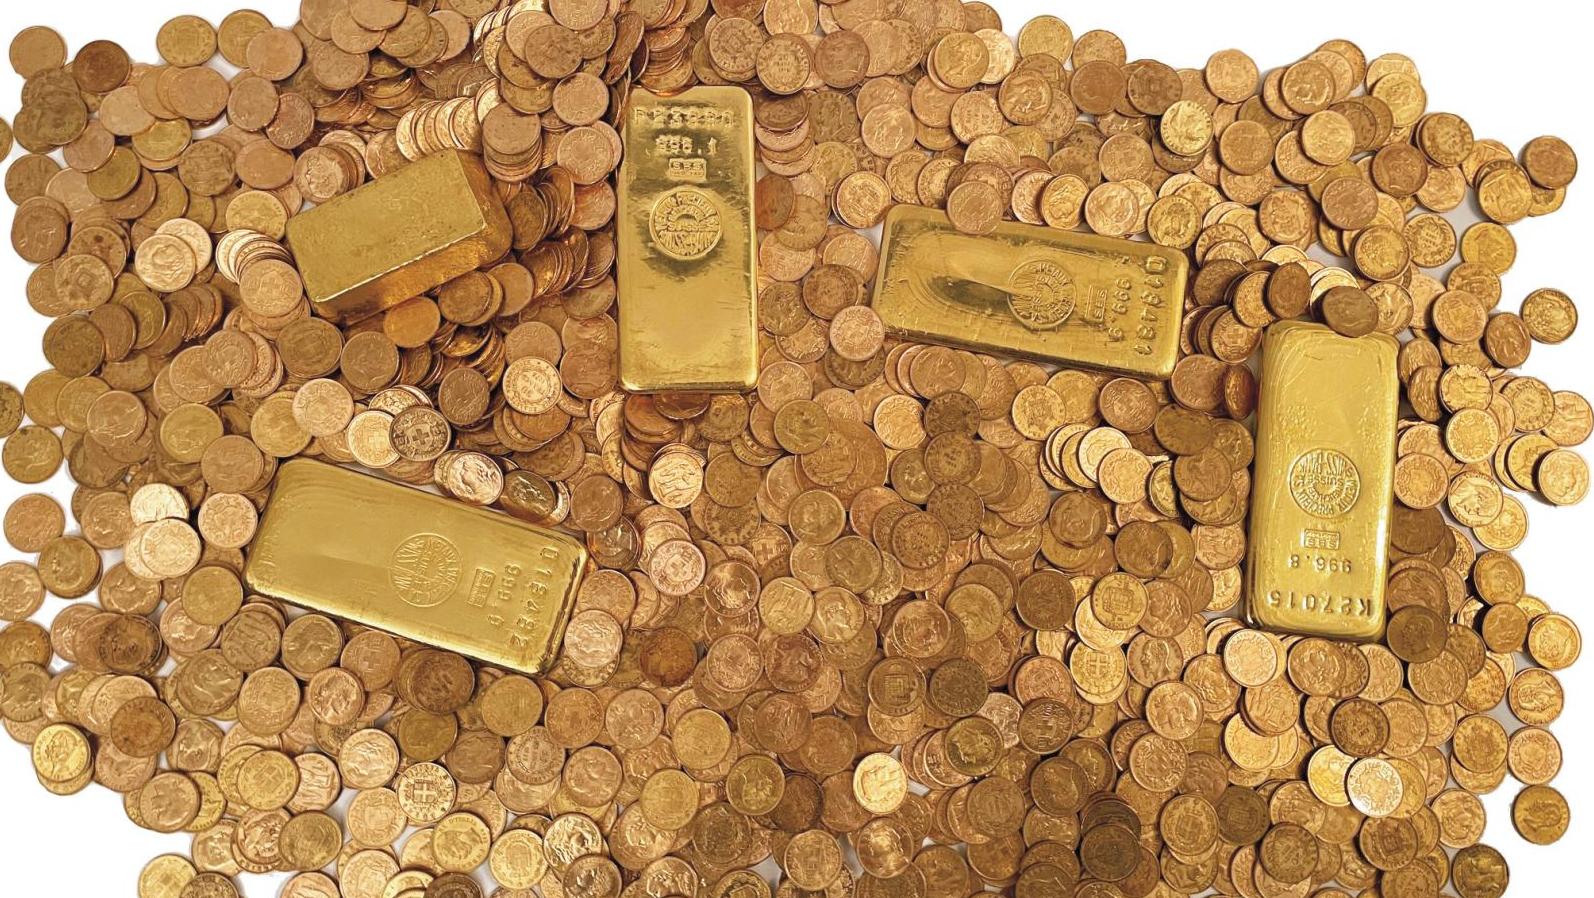 Trésor de Morez composé de cinq lingots et 1 559 pièces d’or, vendu en 153 lots.... Trésor de Morez, une manne tombée du ciel